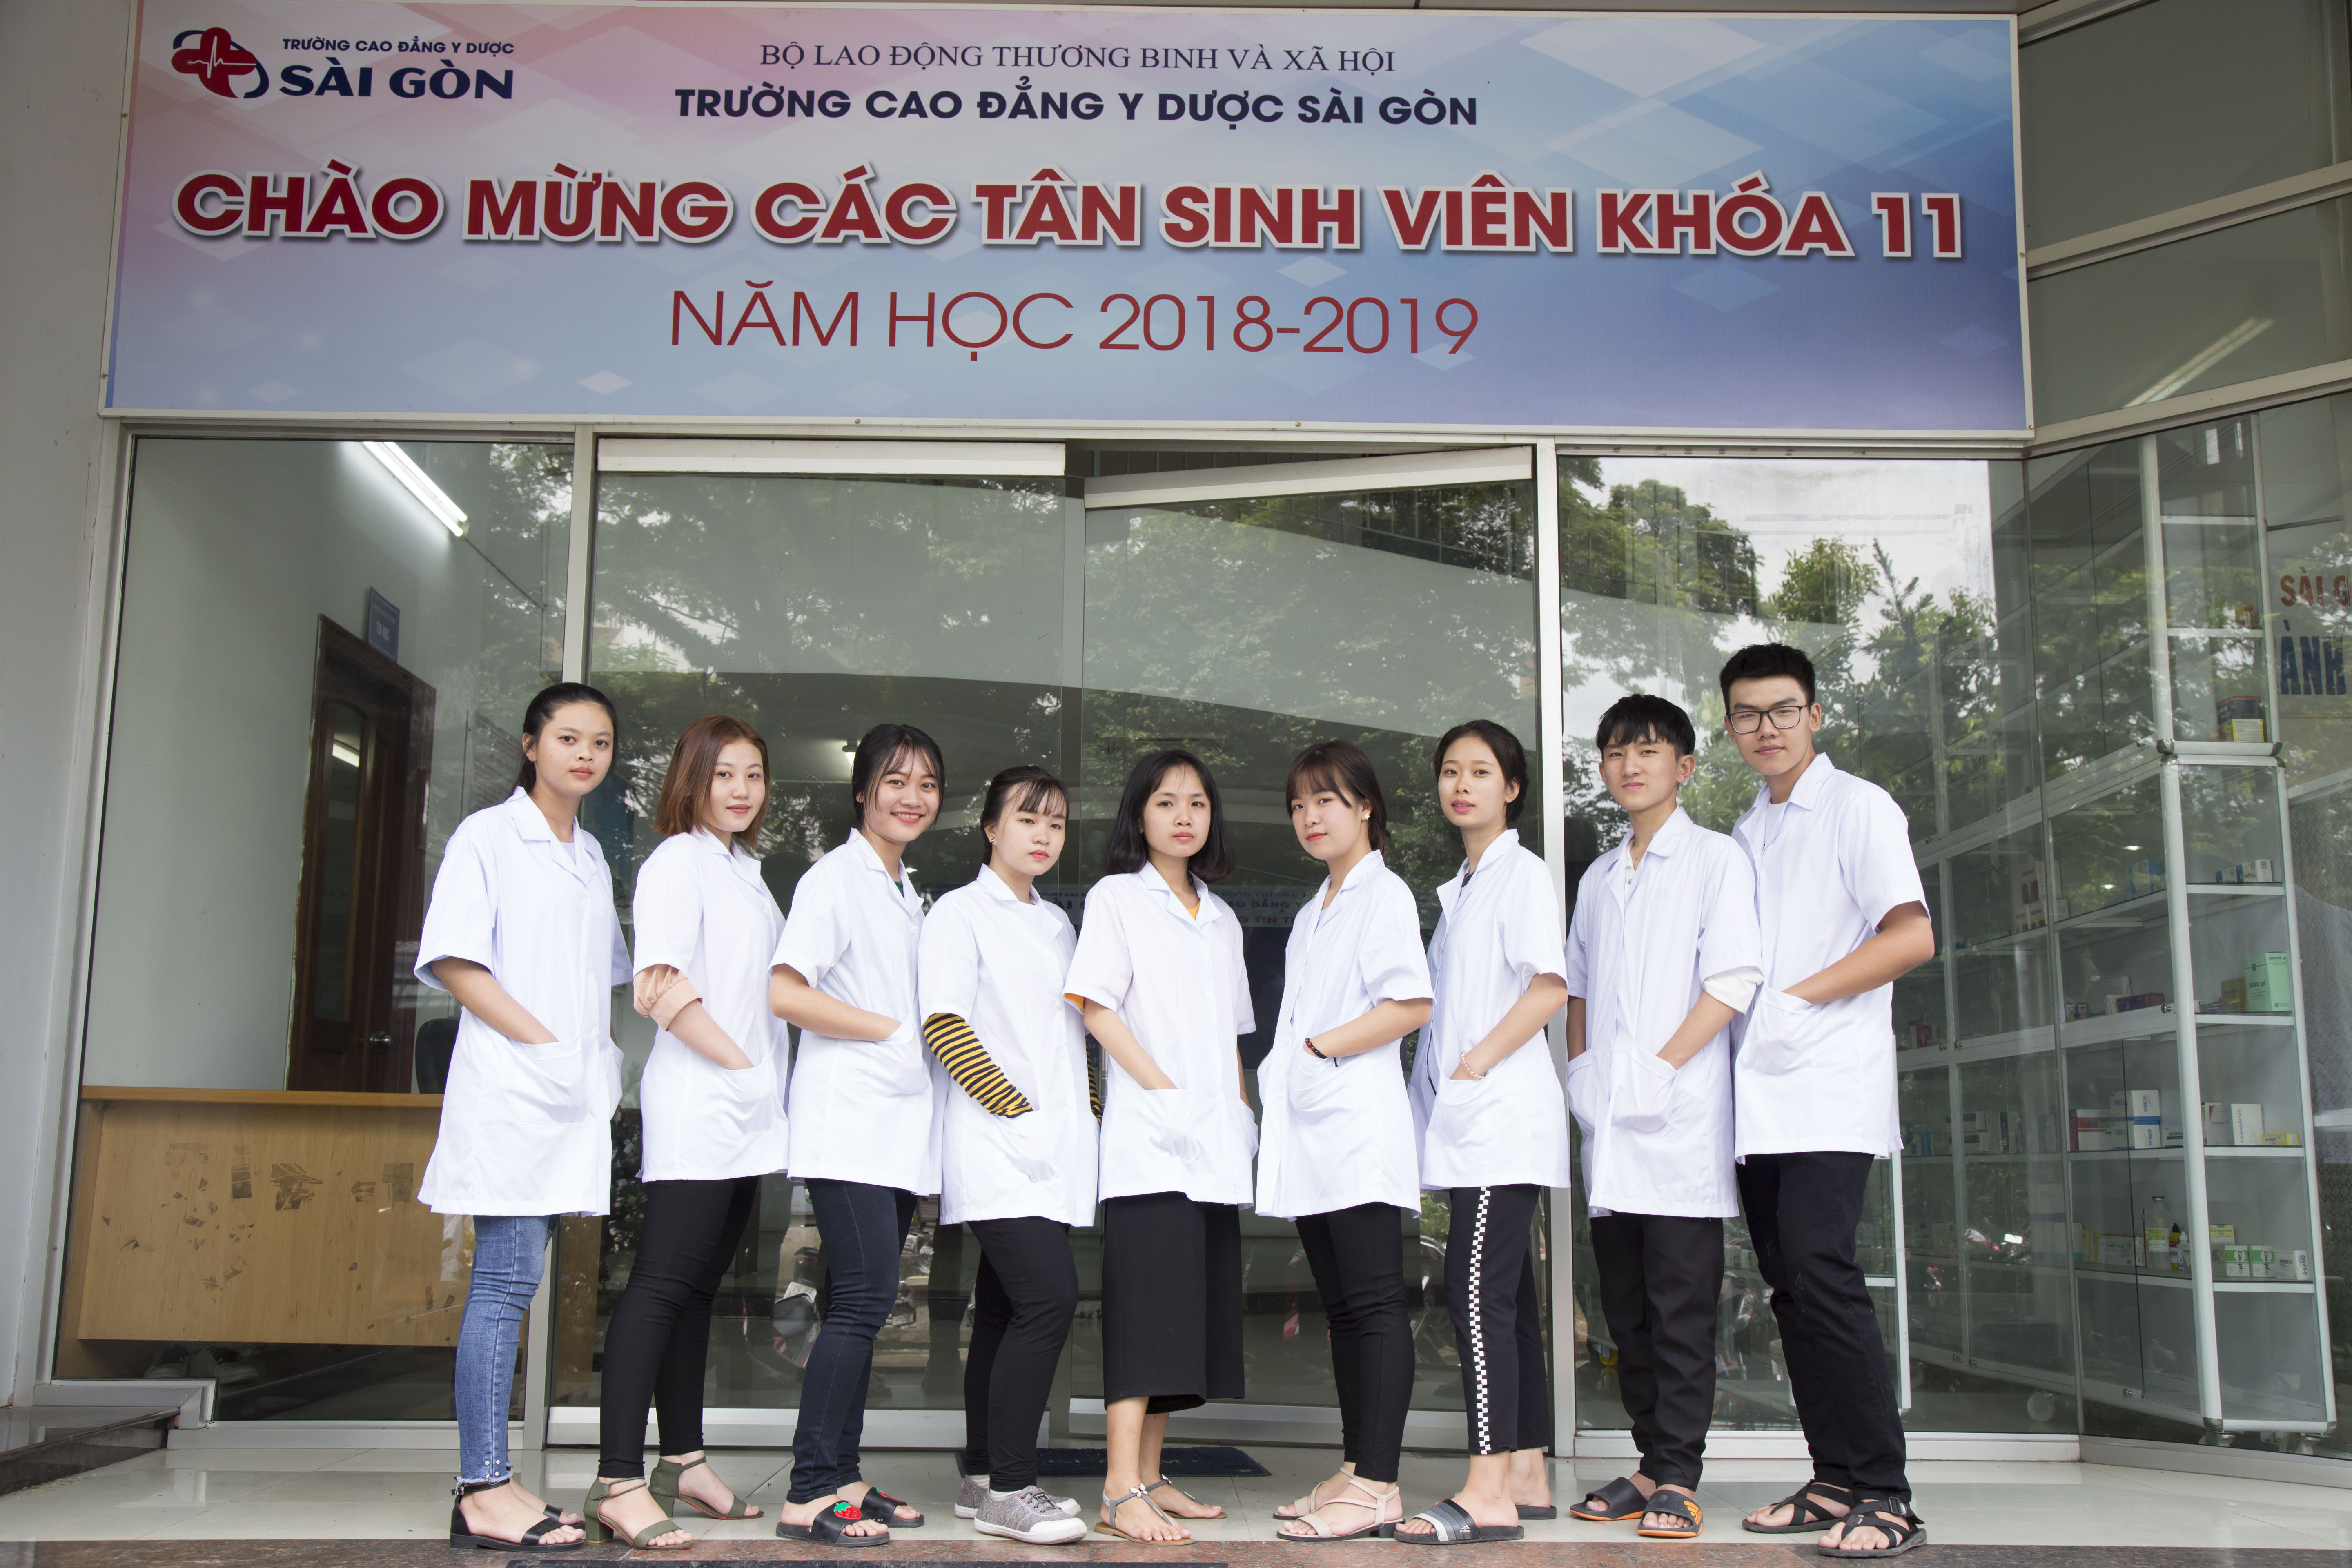 Cao đẳng Y Dược Sài Gòn tuyển sinh Cao đẳng Dược 2018